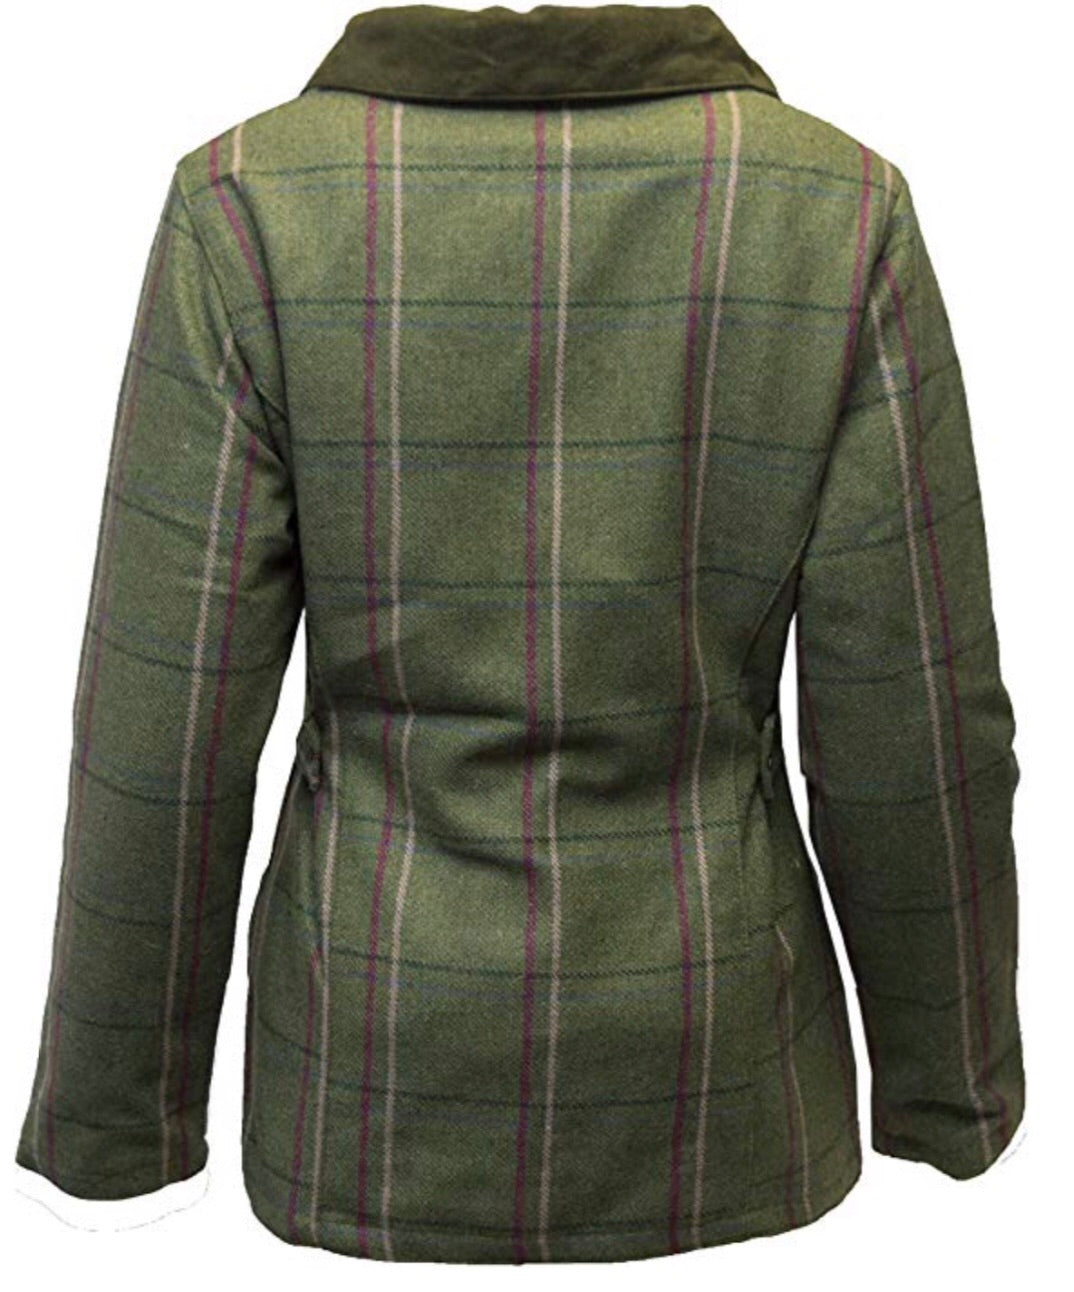 Regents View Ladies tweed jacket-olive with pink